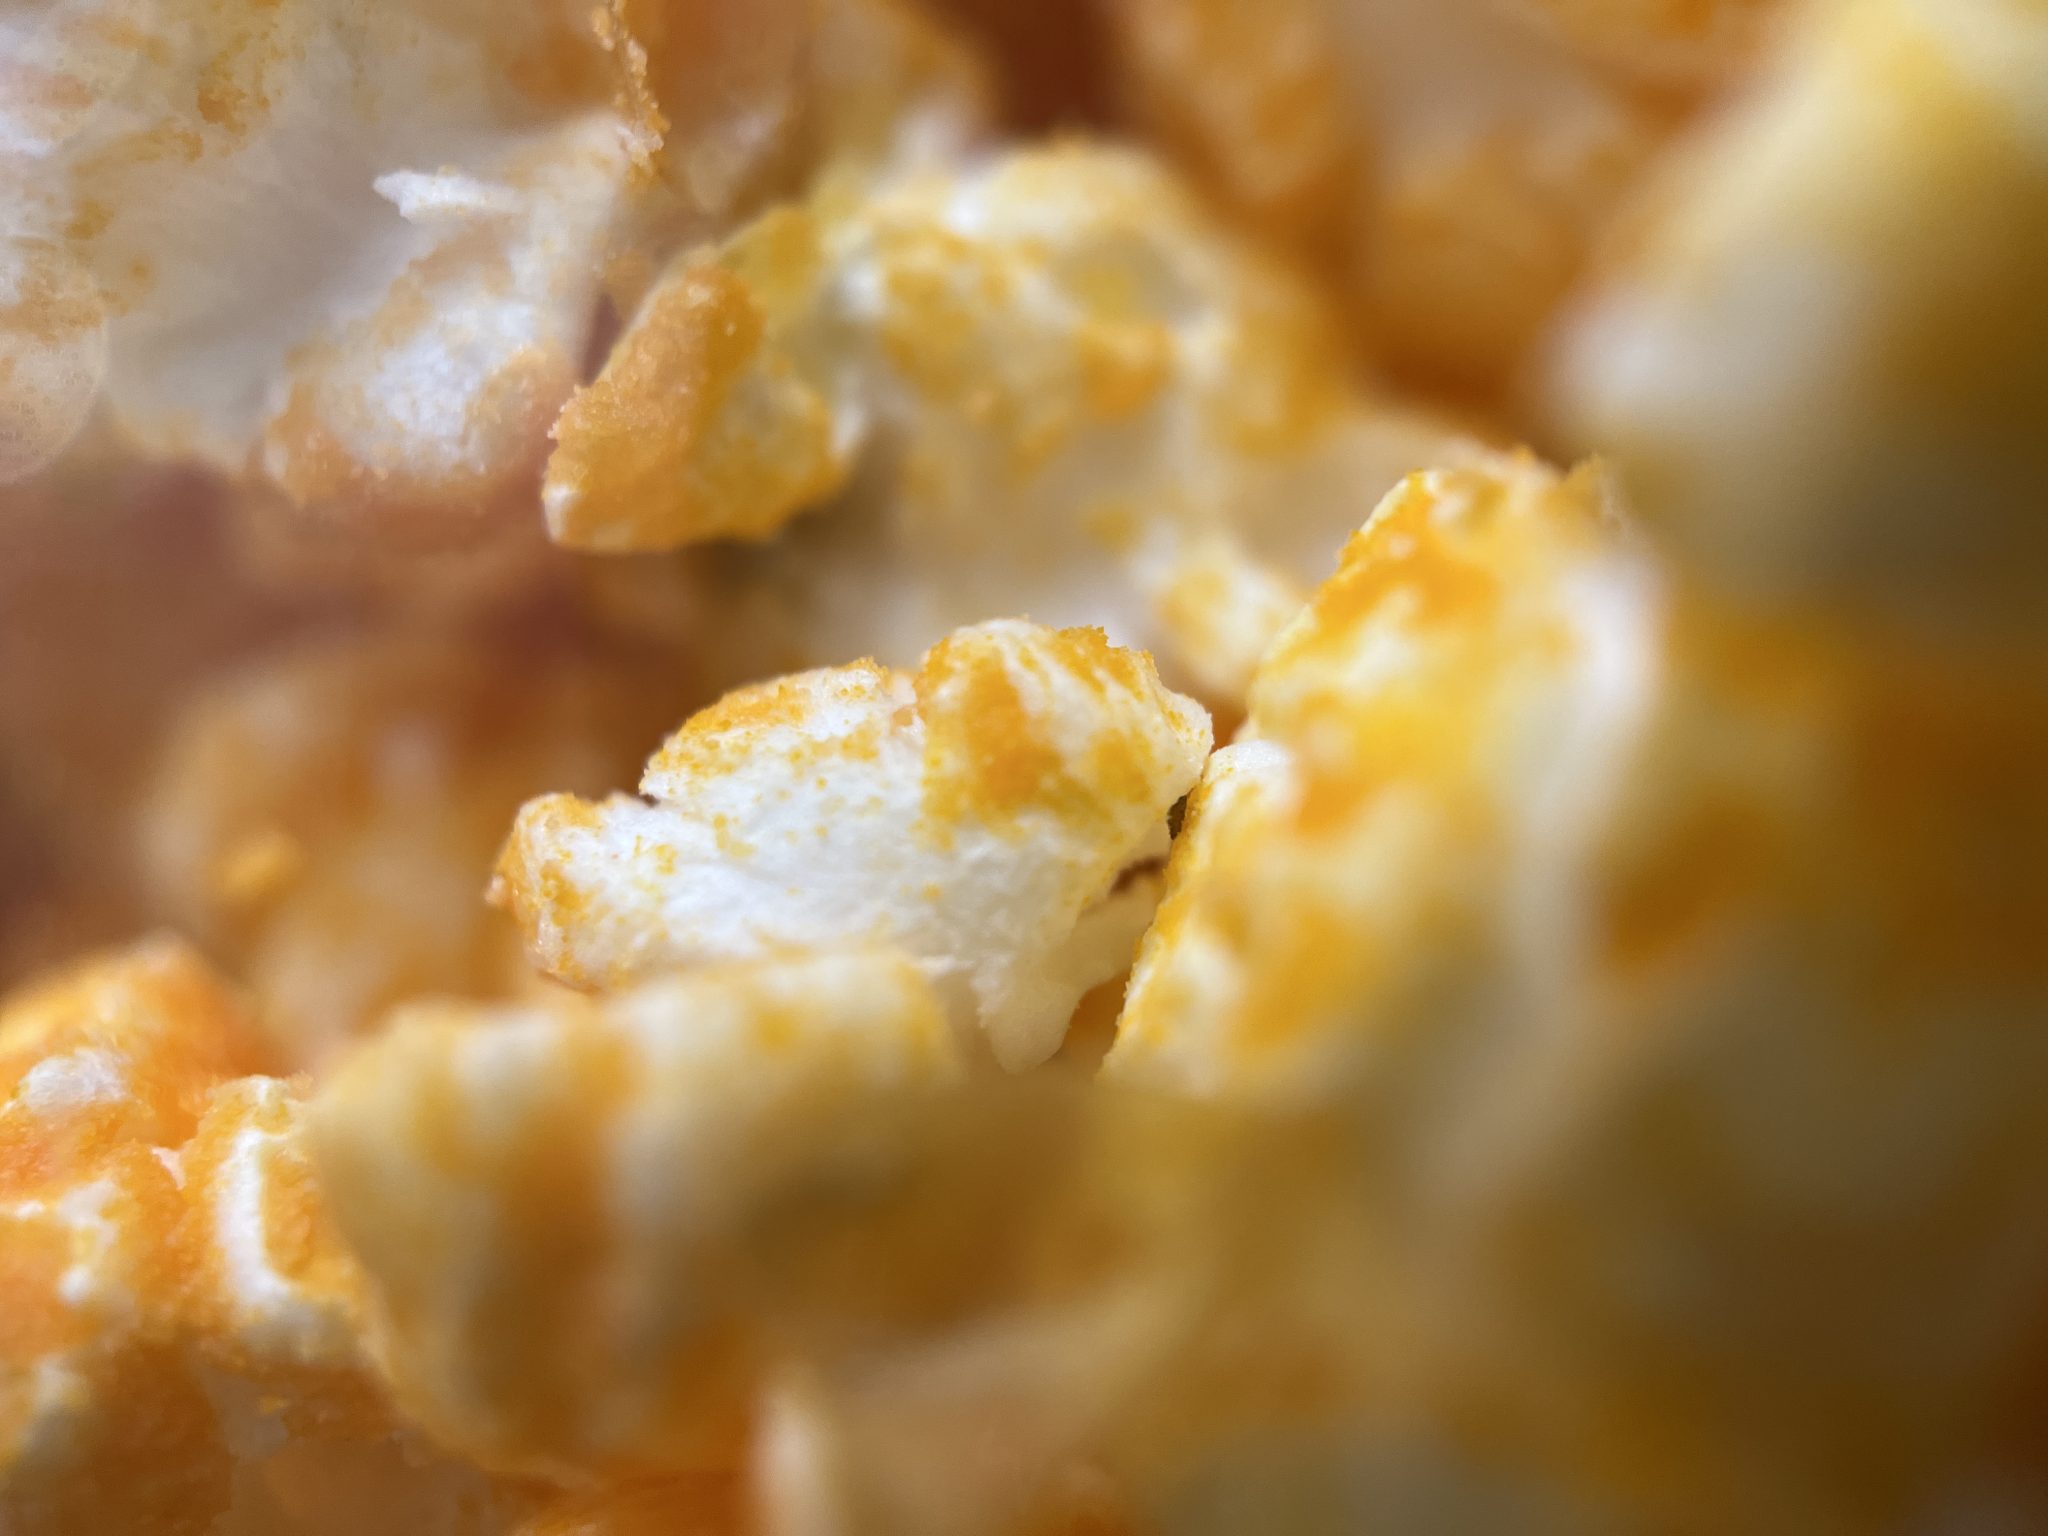 Cheesy popcorn